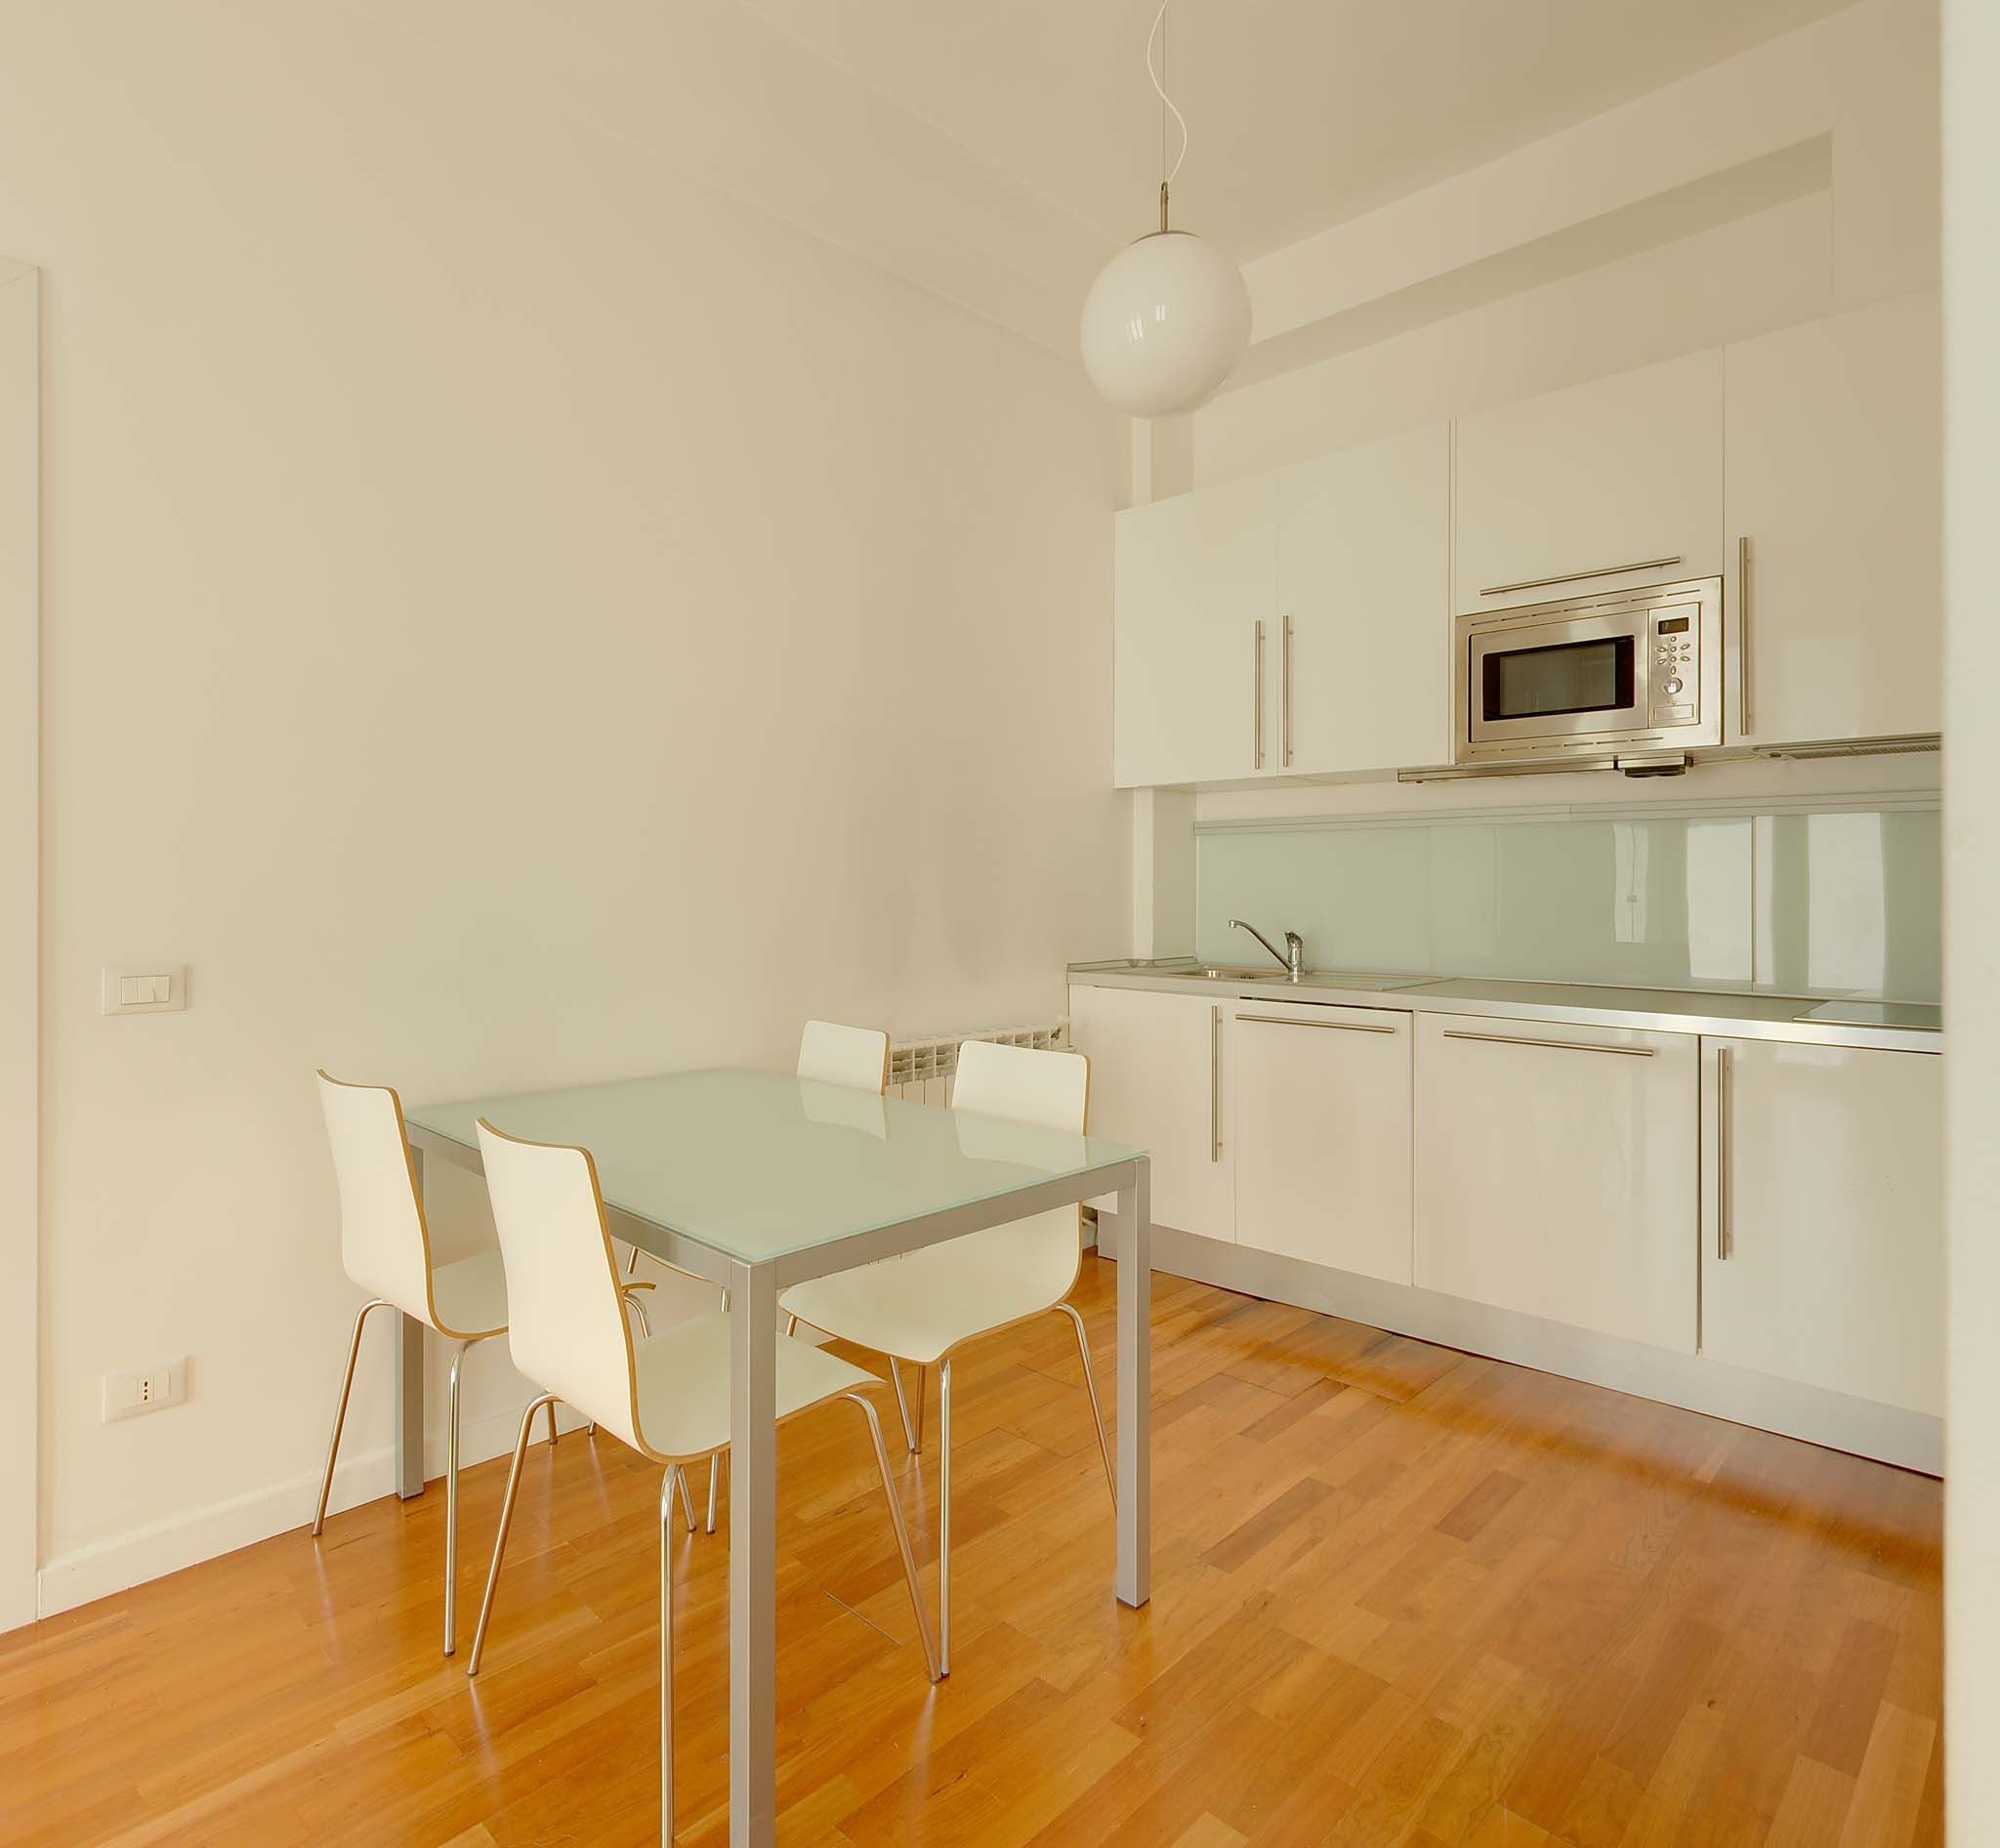 Milano trova e prenota appartamenti vacanze case for Affitti milano monolocali arredati